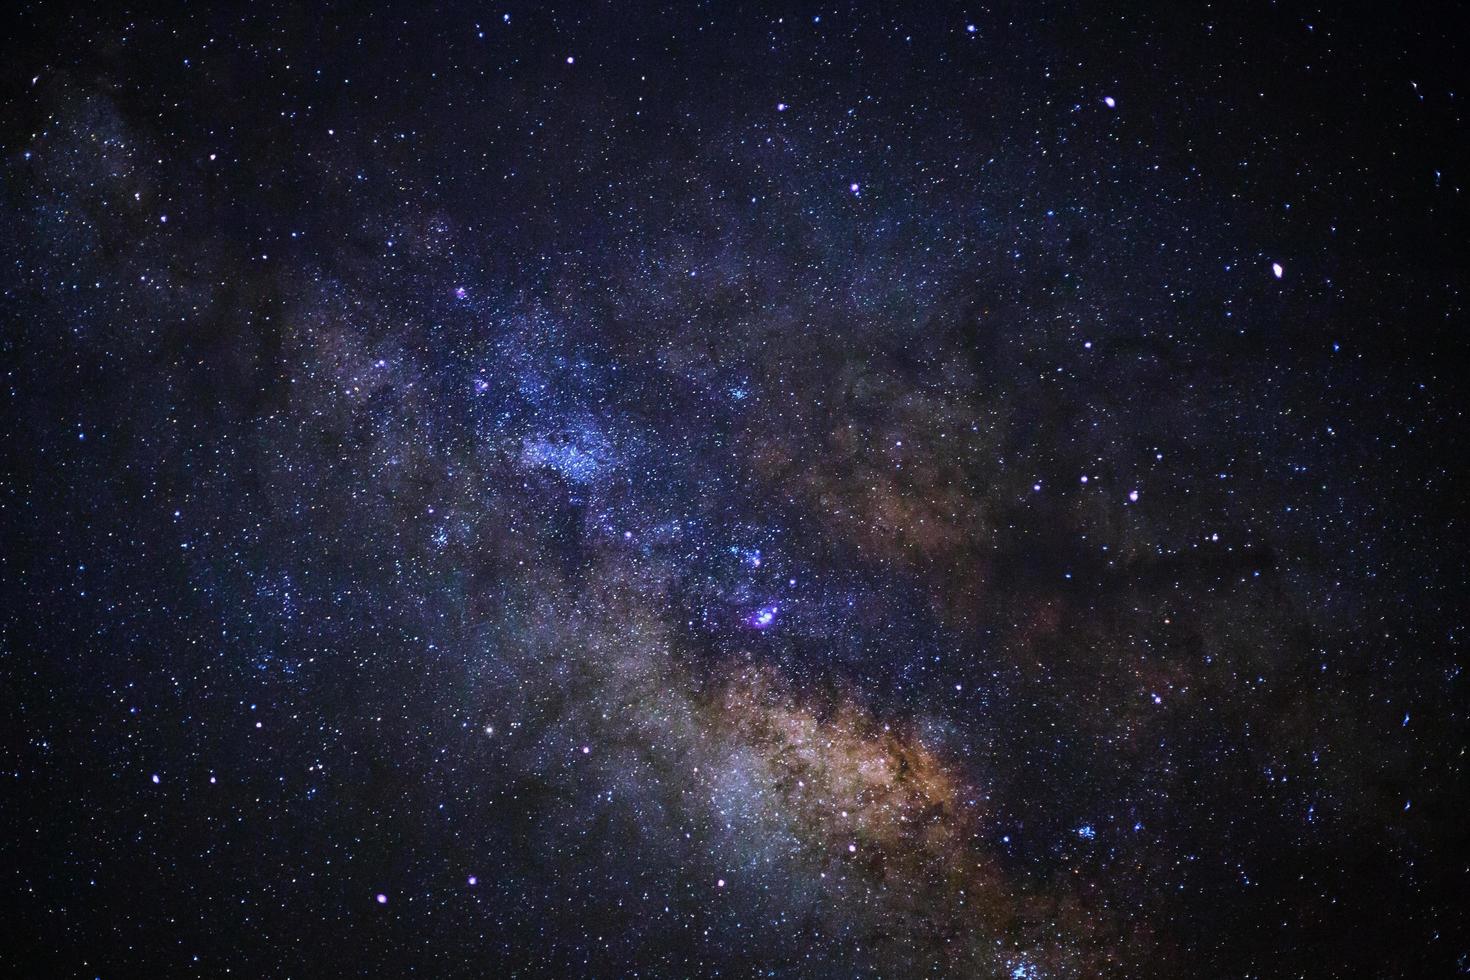 das Zentrum der Milchstraße, Foto mit langer Belichtungszeit, mit Korn